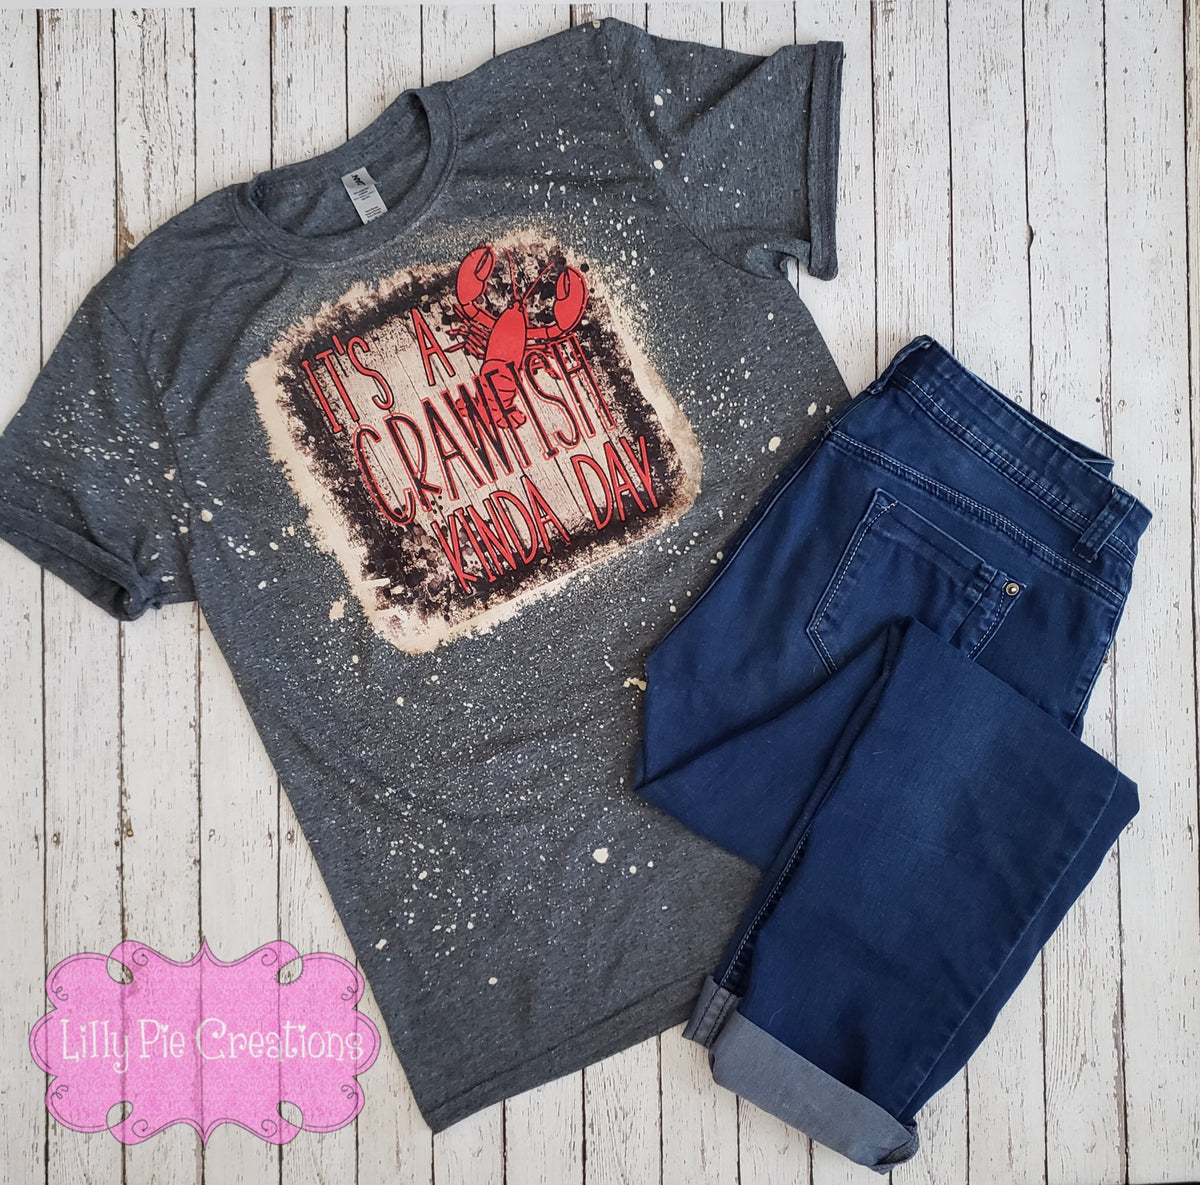 Crawfish Boil T-Shirt | Pink Crawfish | Crawfish Shirt for Ladies |  Louisiana Crawfish | Crawfish Boil Apparel | Cajun T-Shirt For Girls